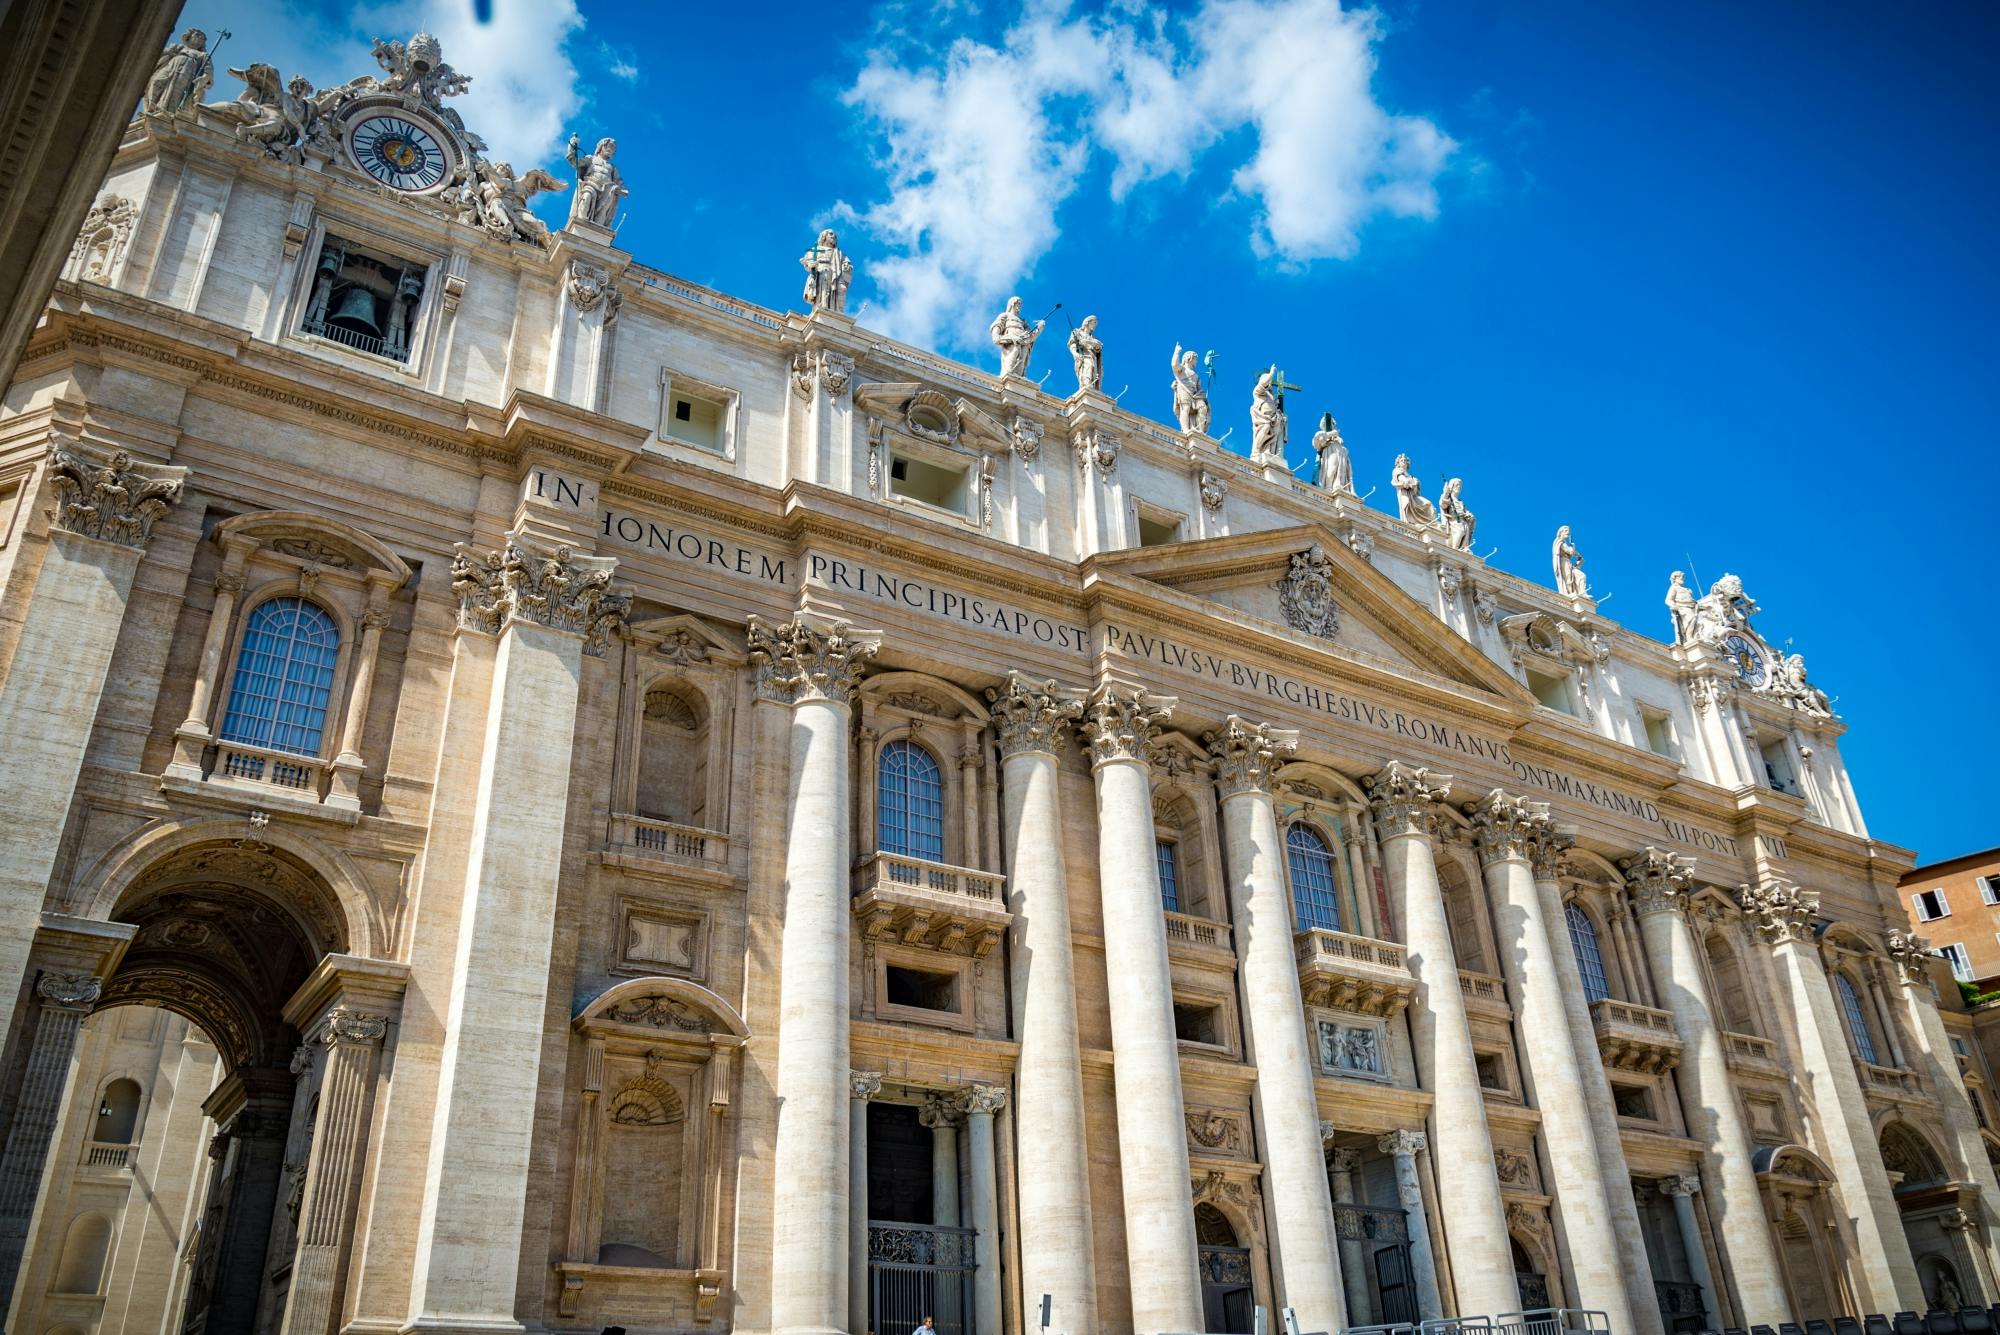 Passe OMNIA Vaticano e Roma de 72 horas com transporte